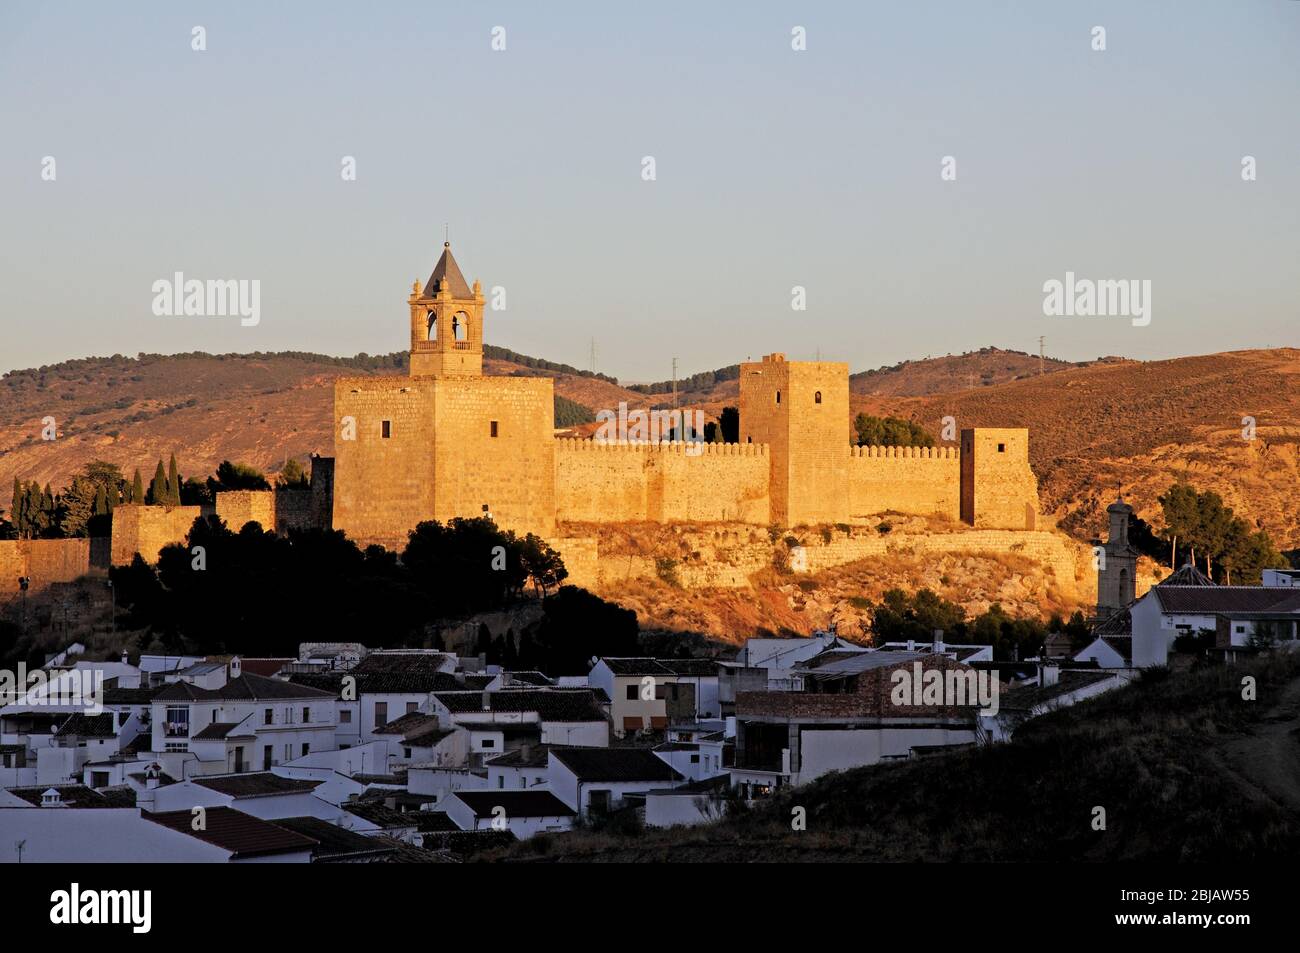 Castello Fortezza nel sole del tardo pomeriggio, Antequera, provincia di Malaga, Andalusia, Spagna, Europa occidentale. Foto Stock